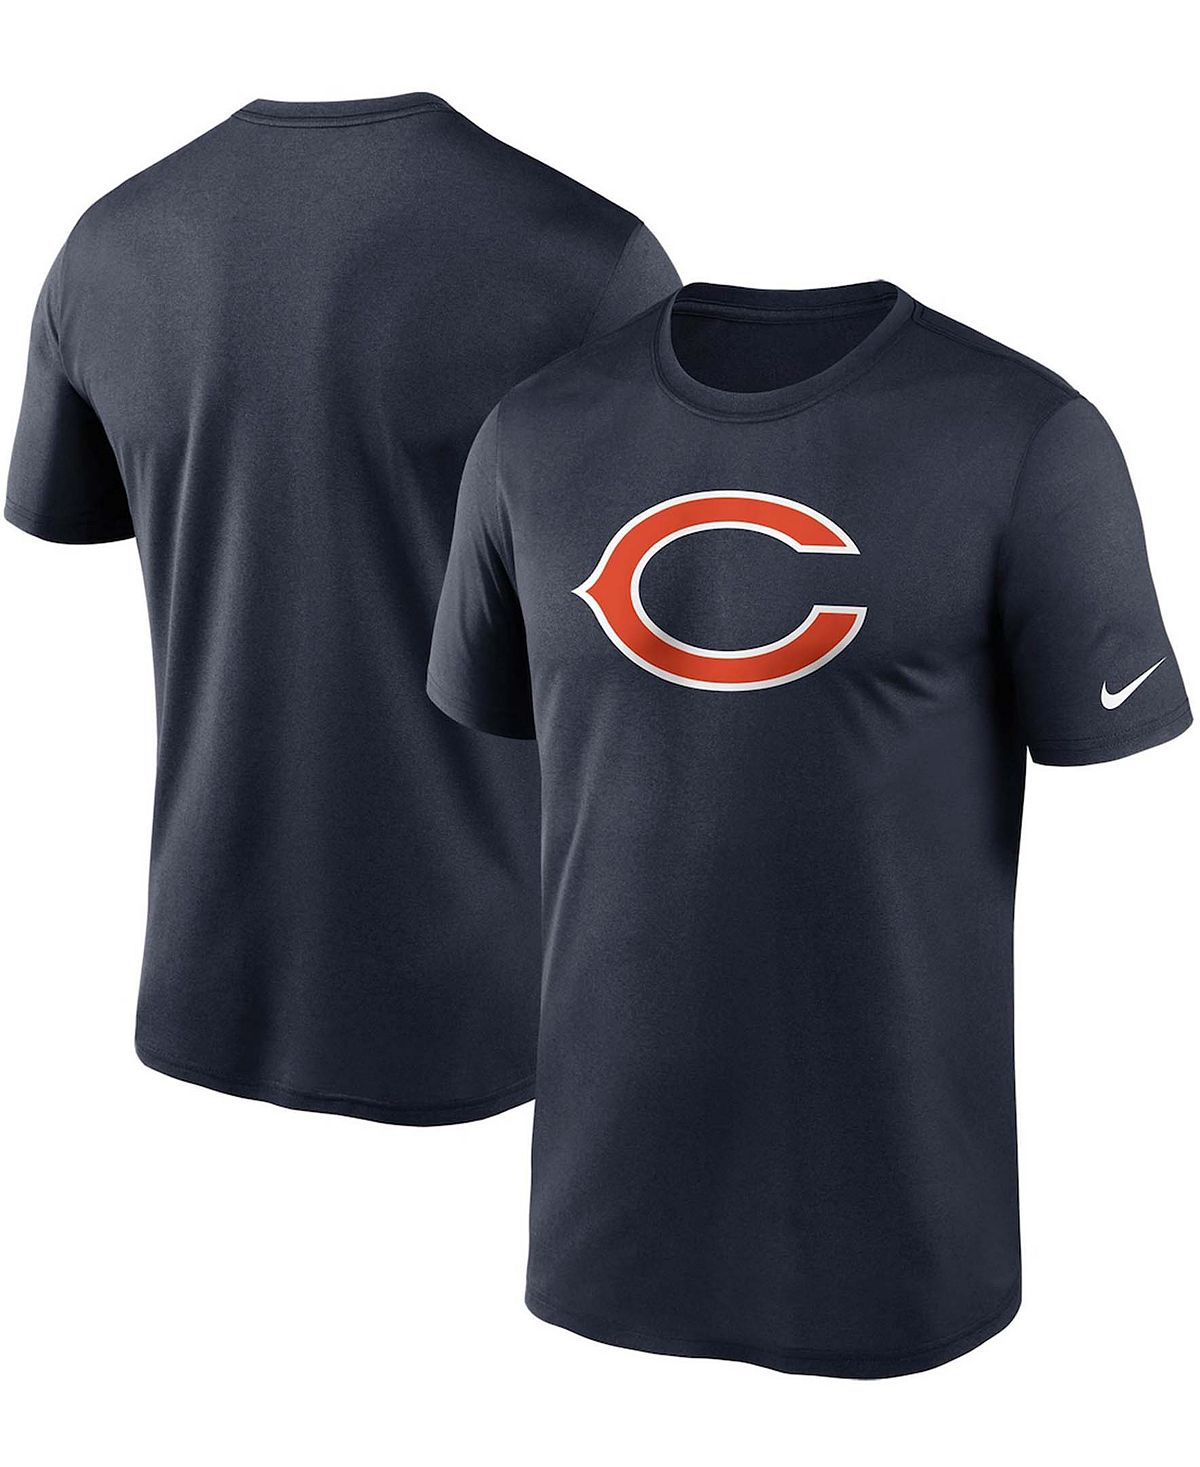 Мужская темно-синяя футболка с логотипом Chicago Bears Essential Legend Performance Nike